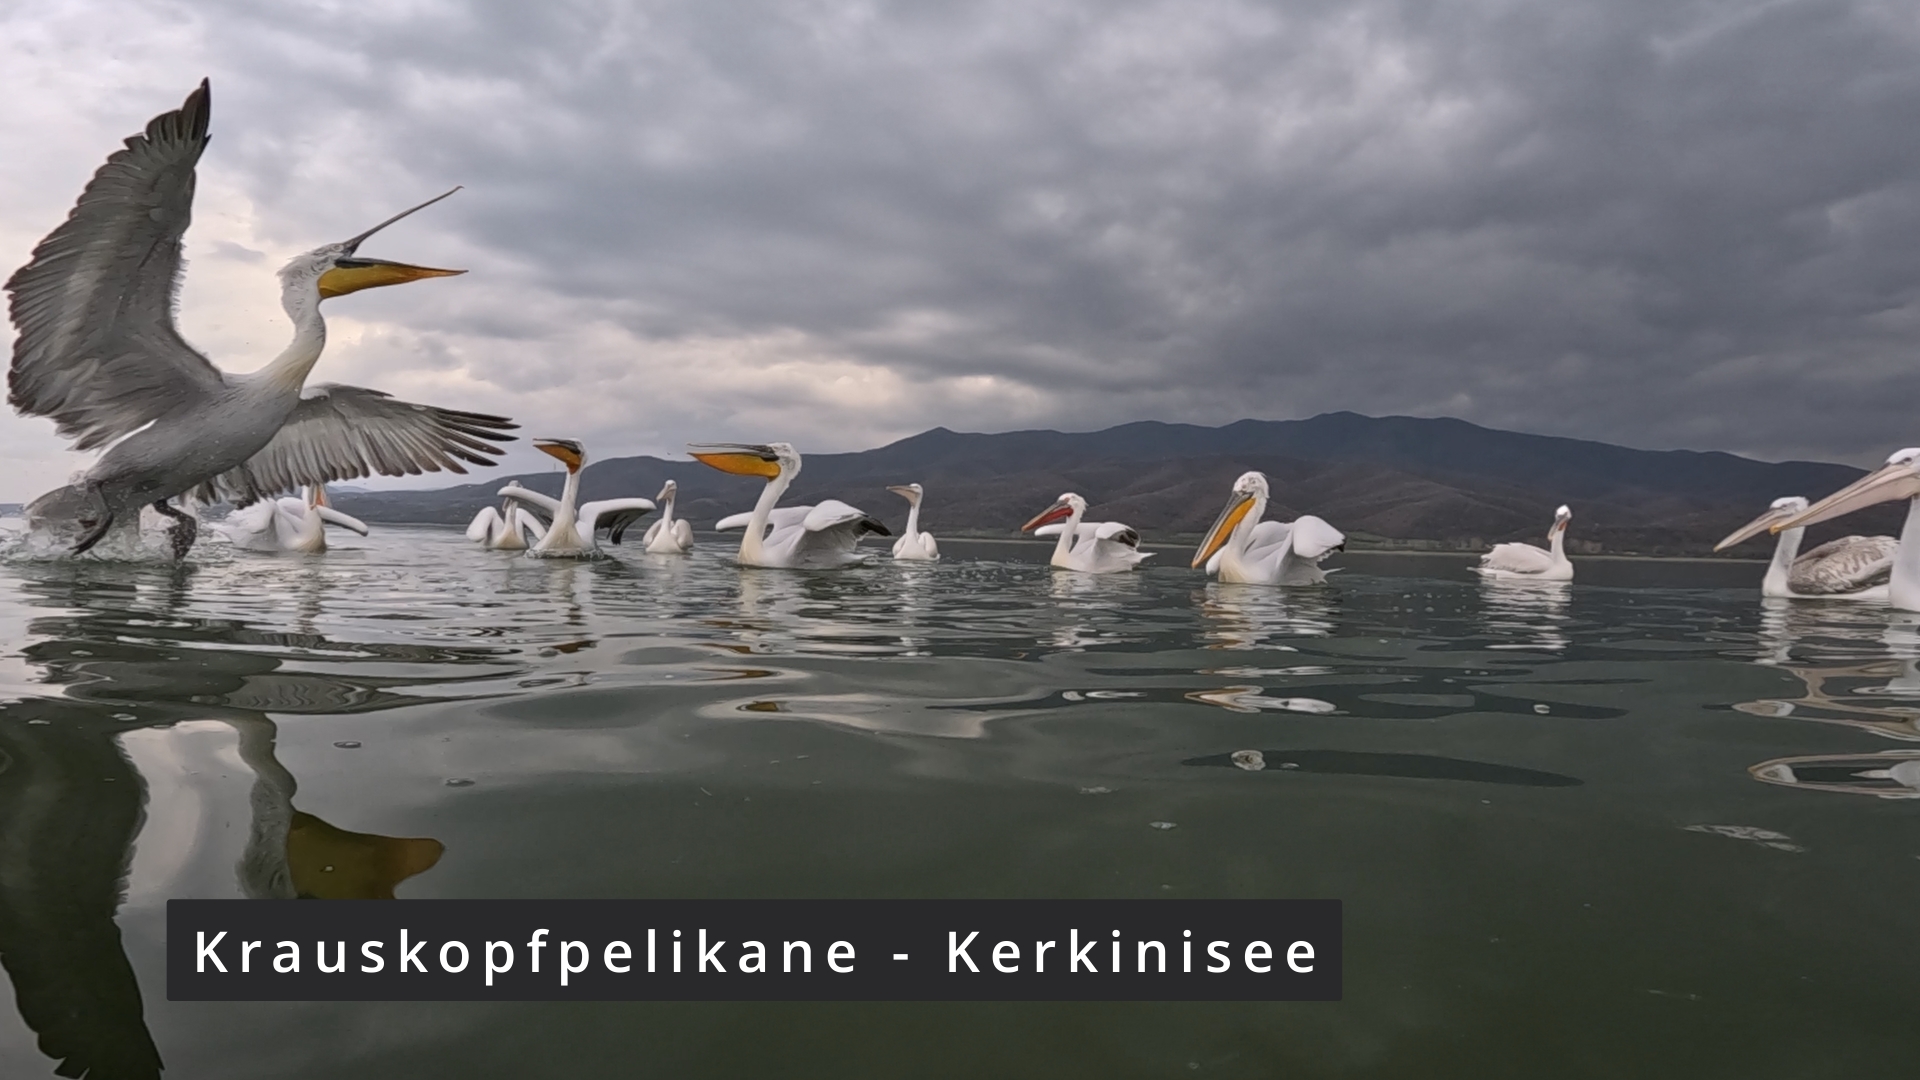 Pelikane - Kerkinisee